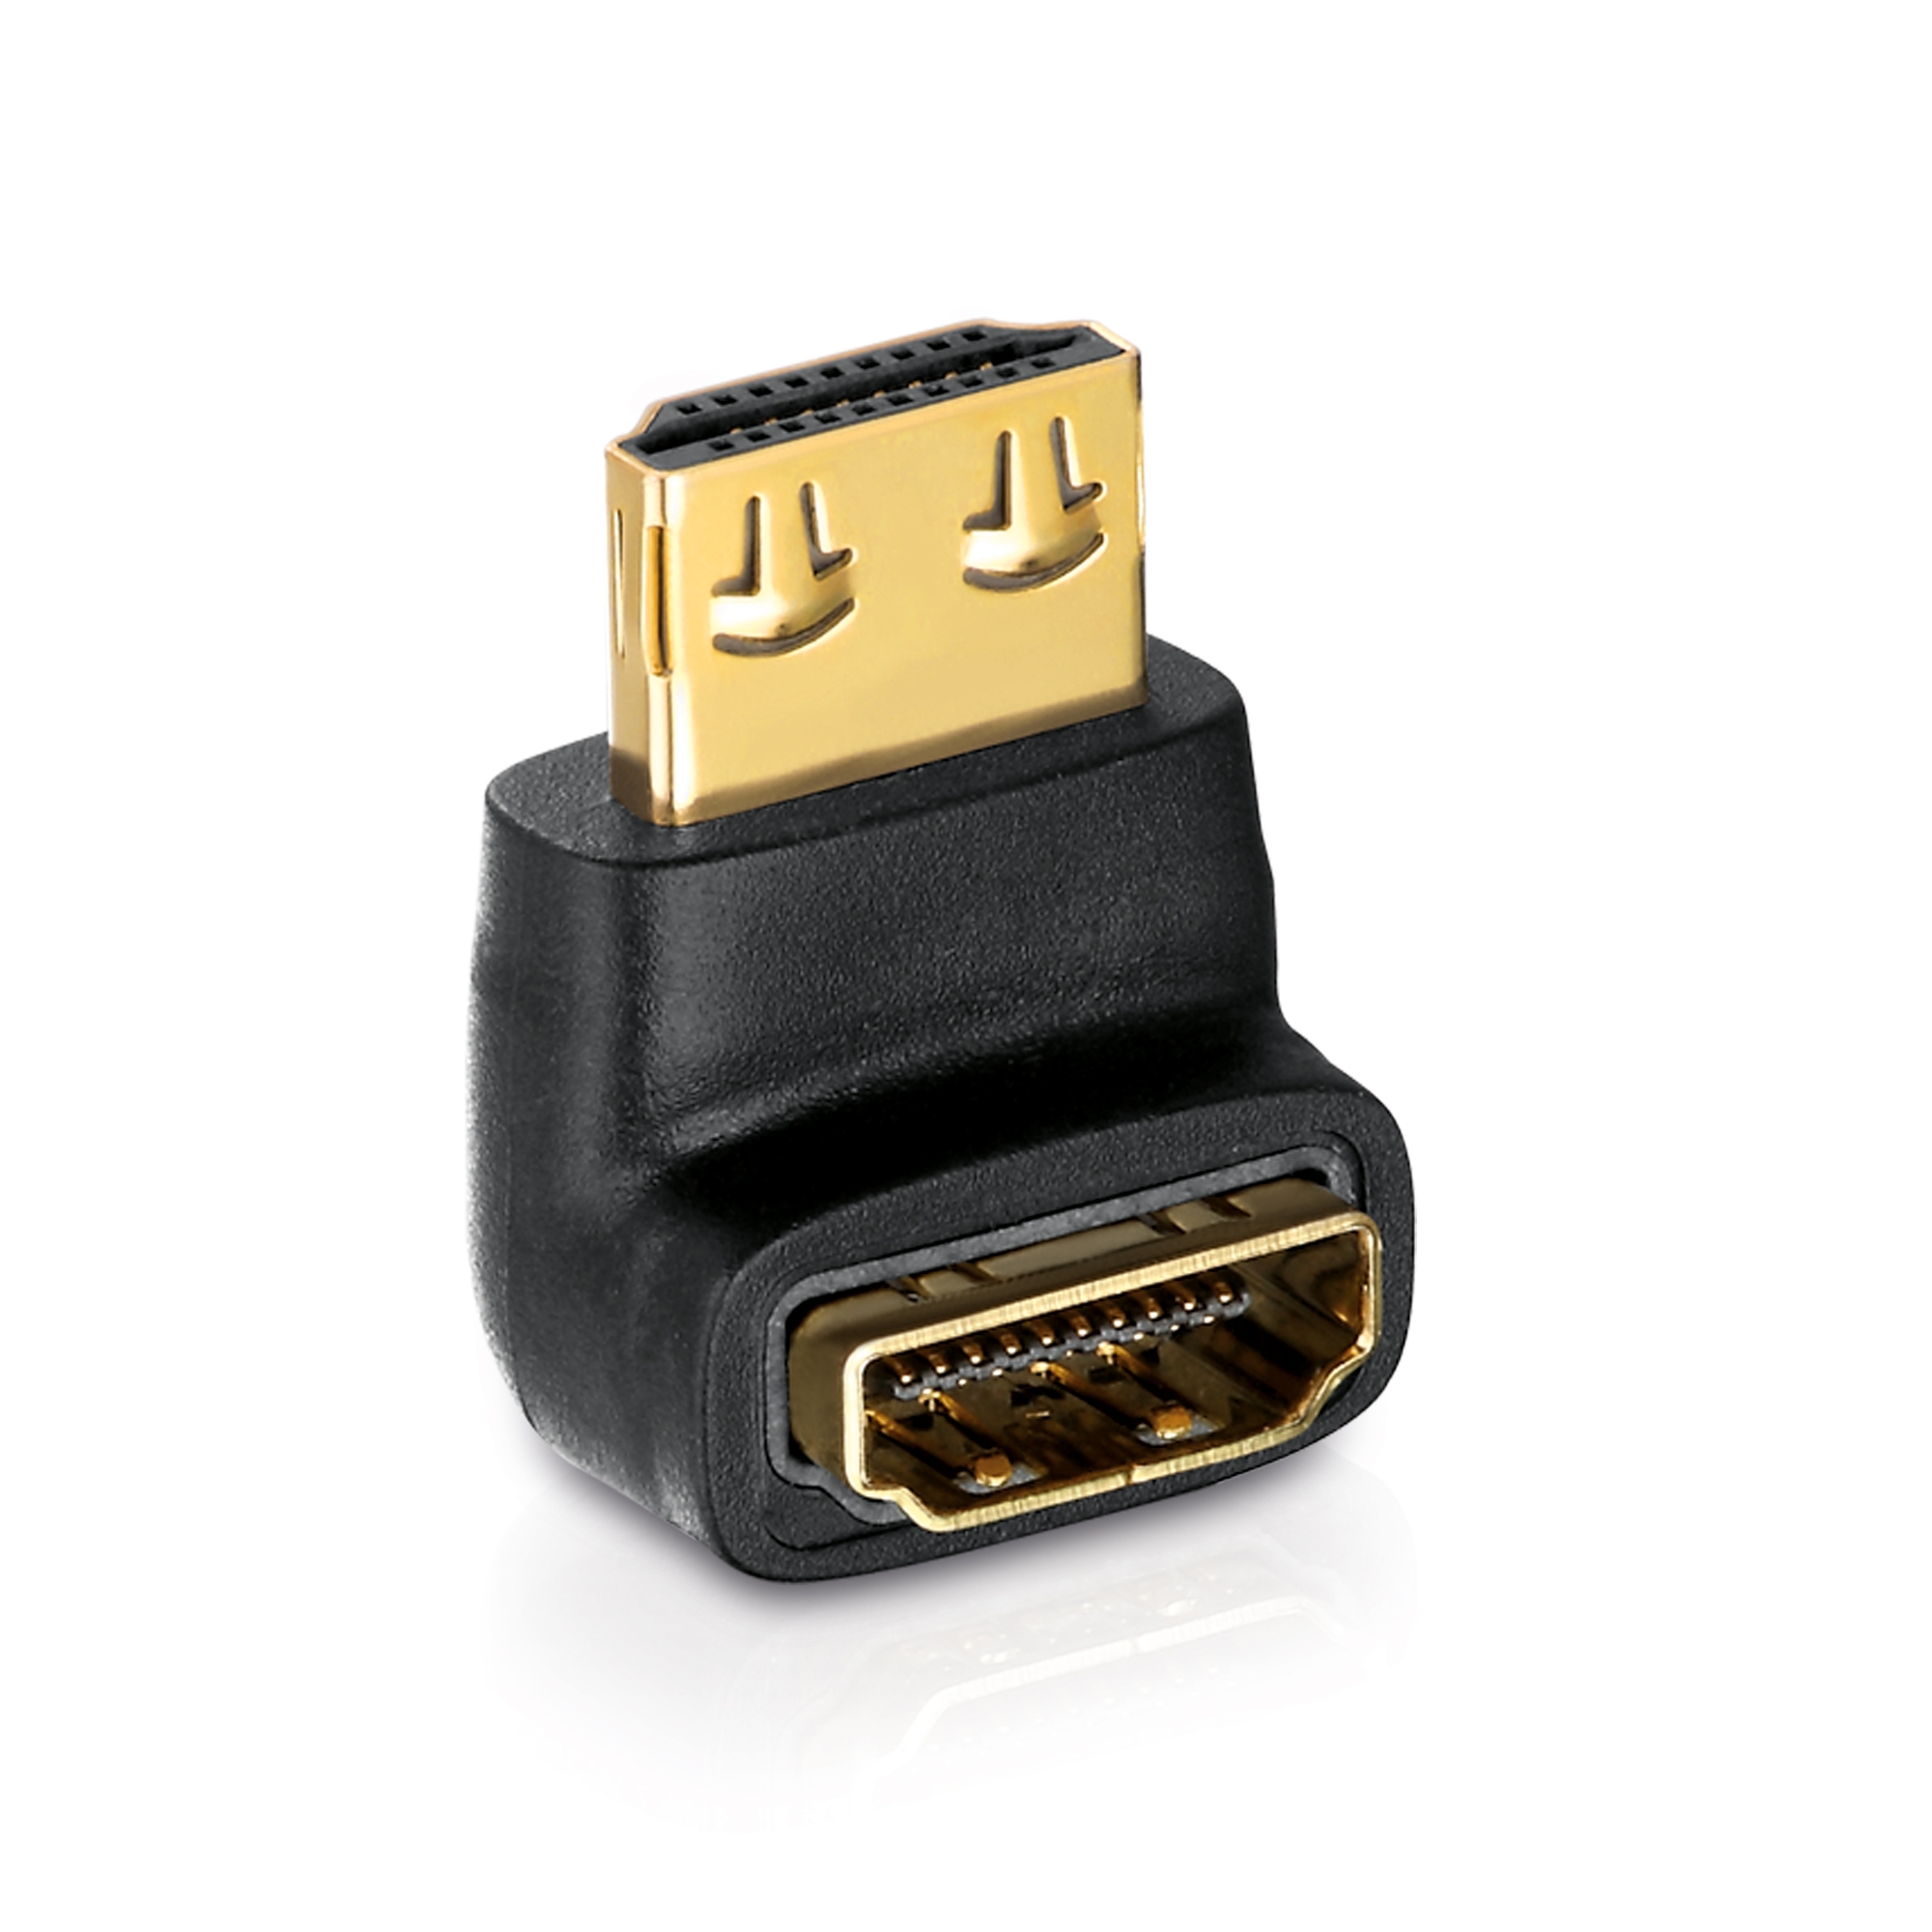 HDMI Stecker zu chse 270 Grad Winkel HDMI-Adapter 1080P vergoldet Kontakte 